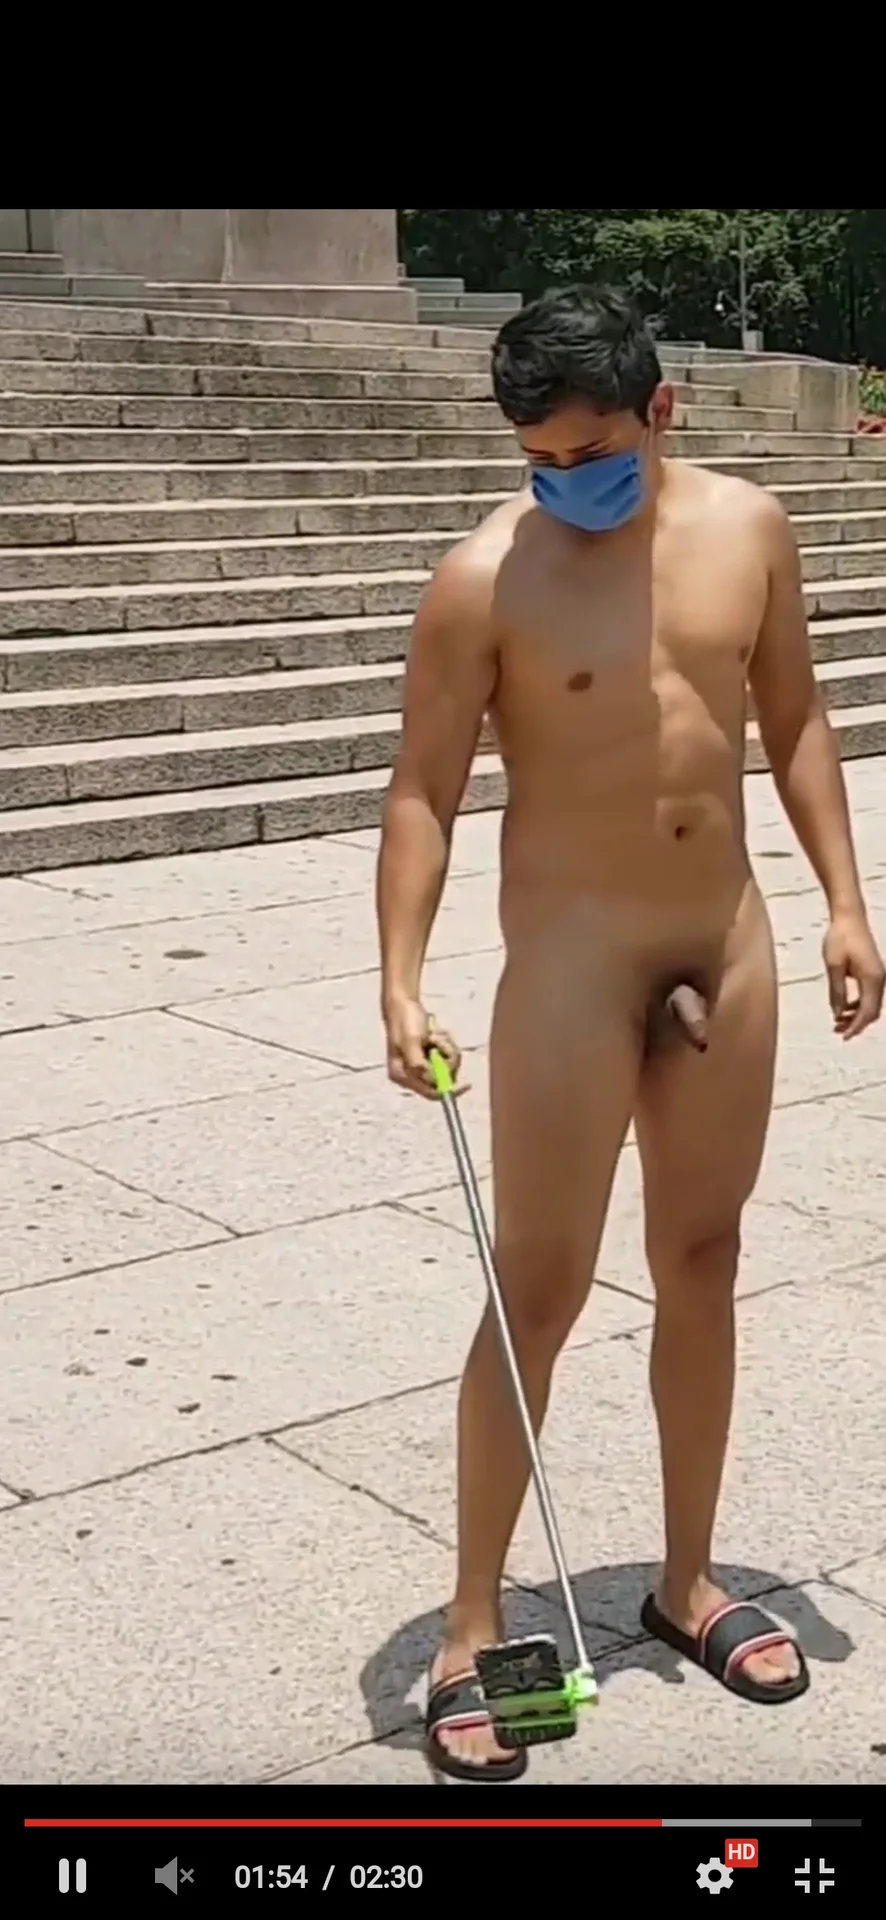 Male nude public